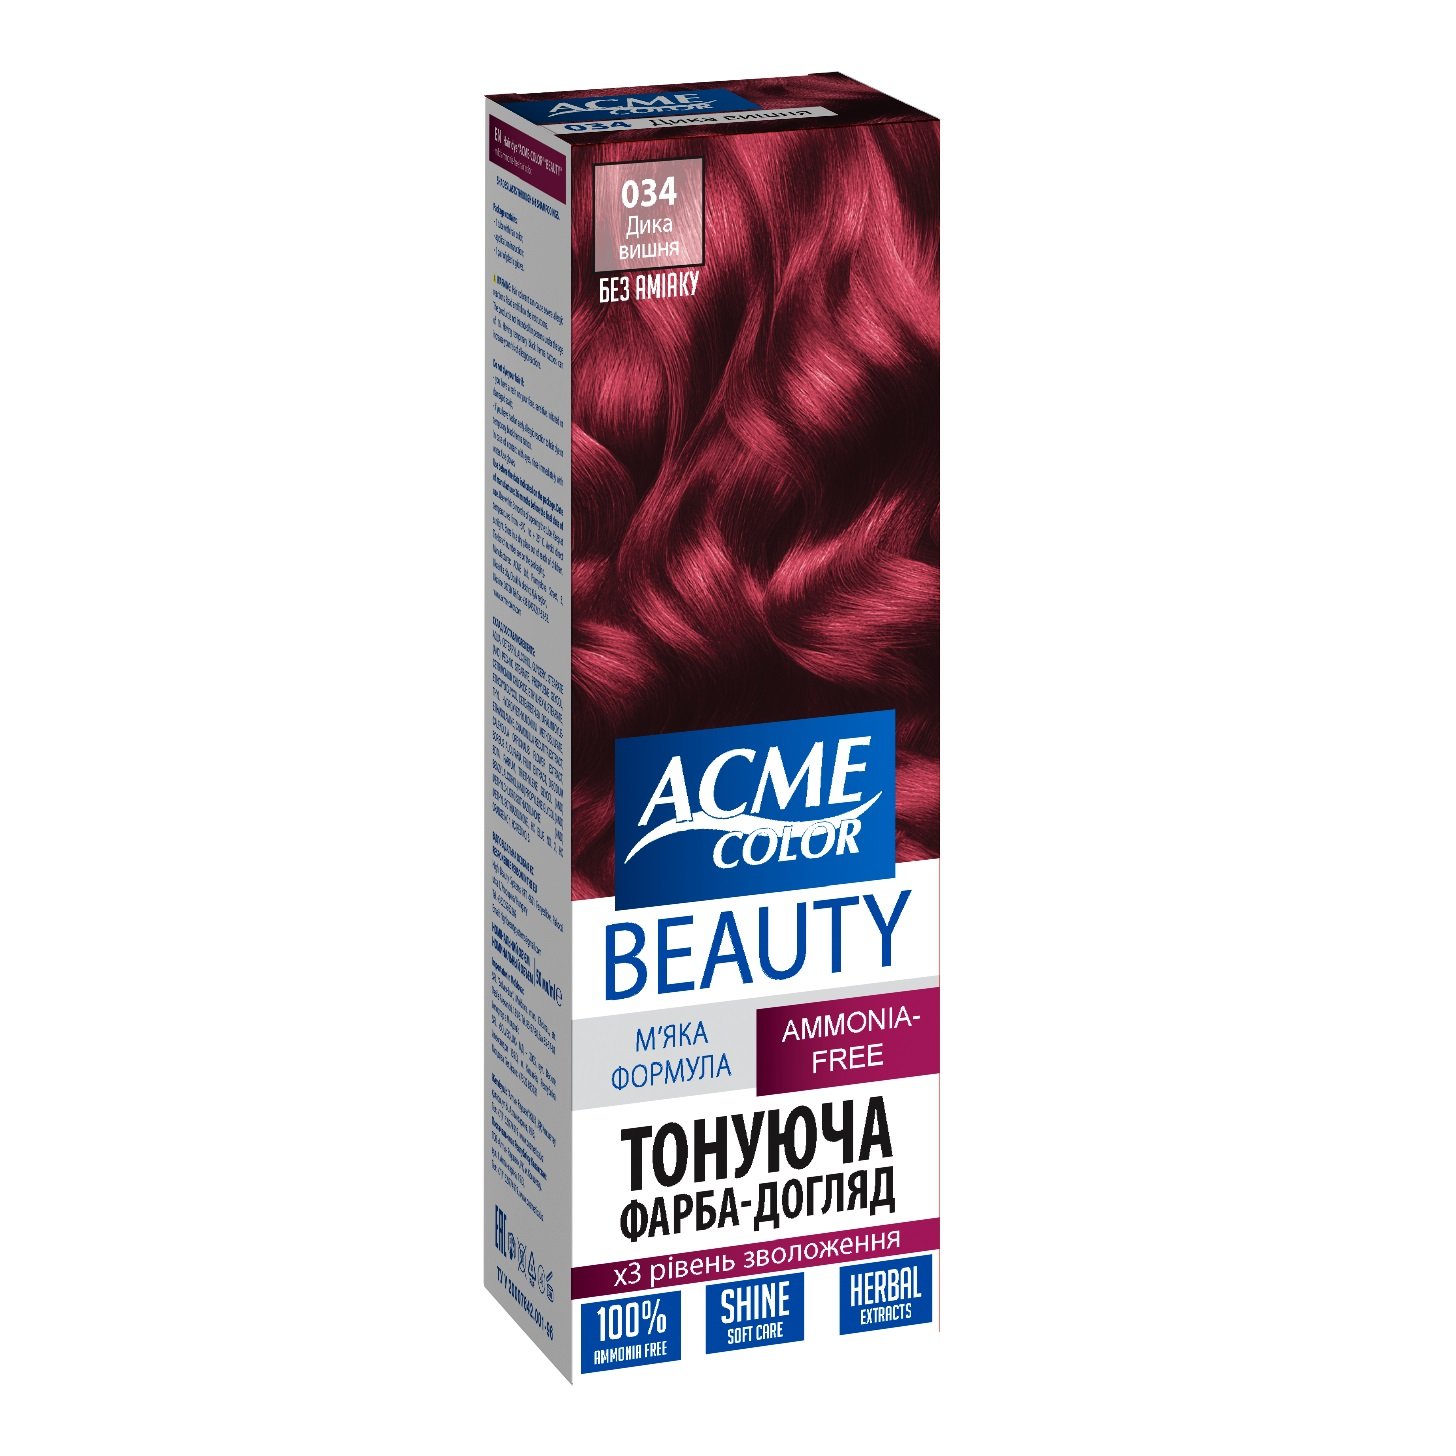 Гель-фарба для волосся Acme-color Beauty, відтінок 034 (Дика вишня), 69 г - фото 1